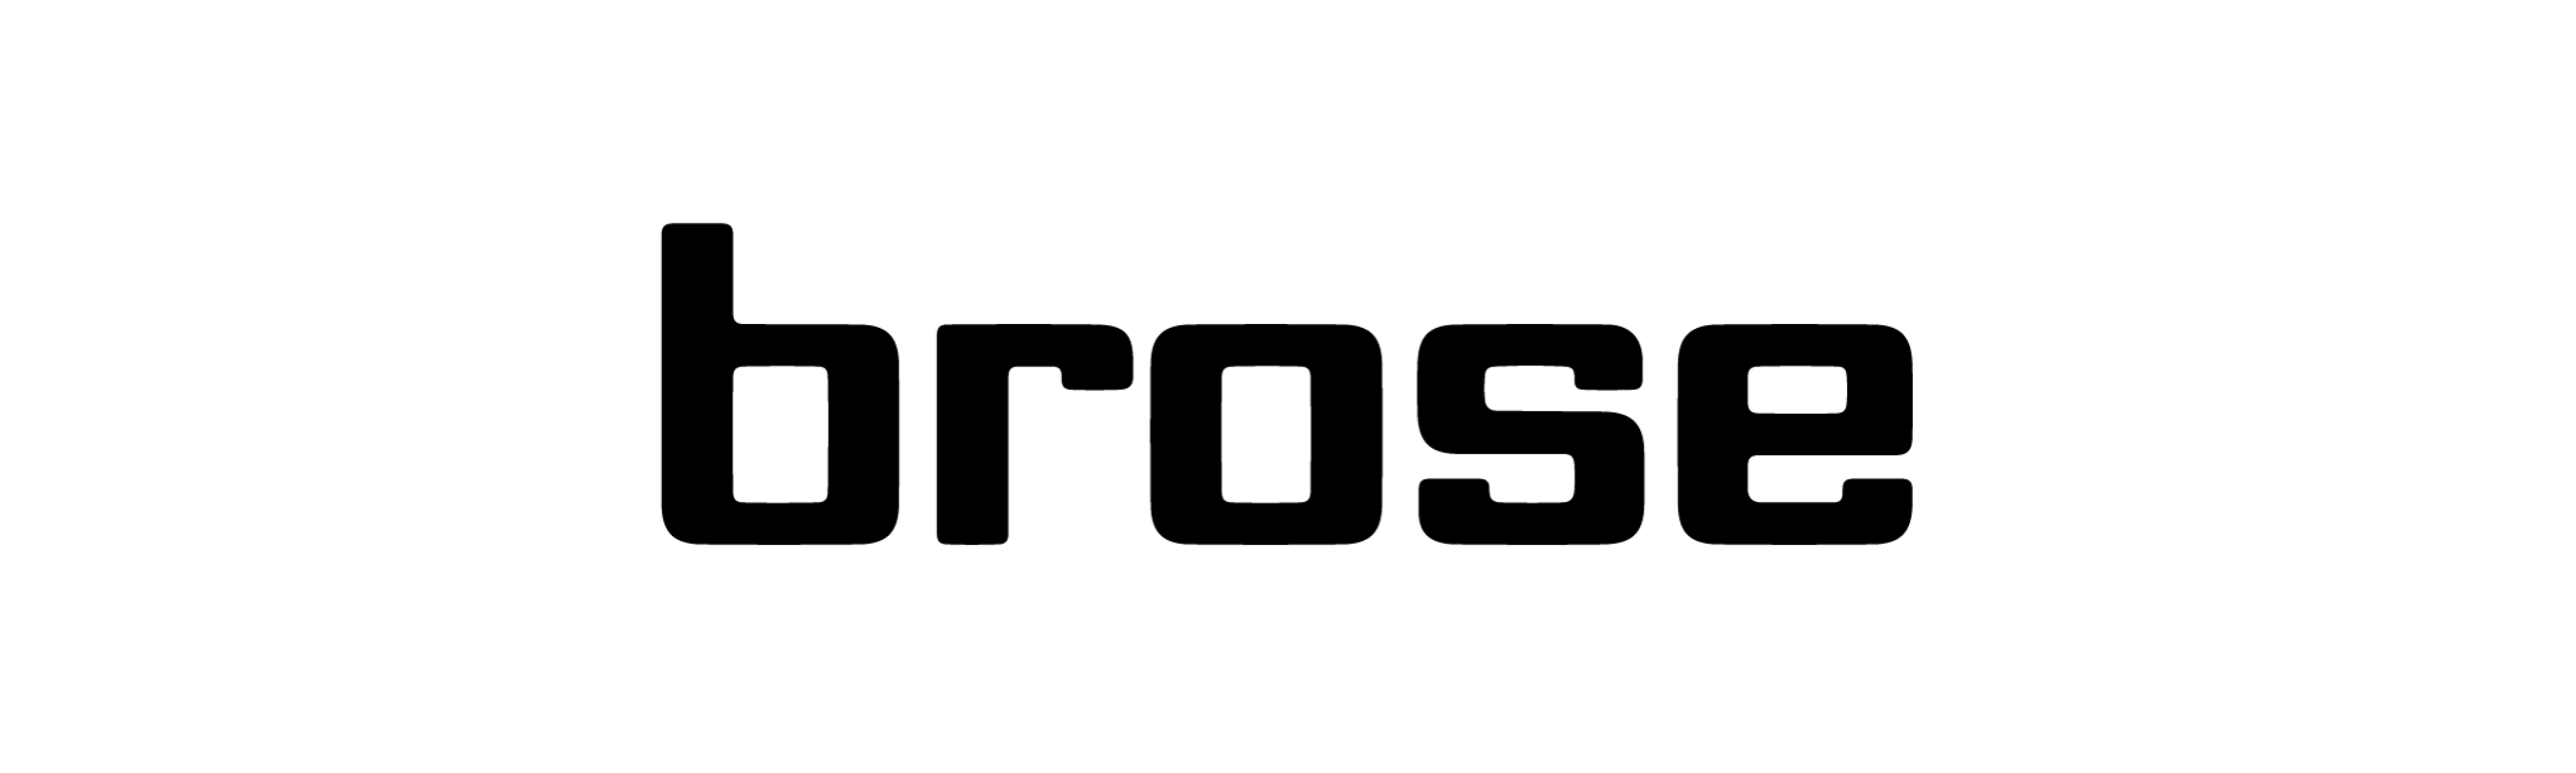 Logo brose